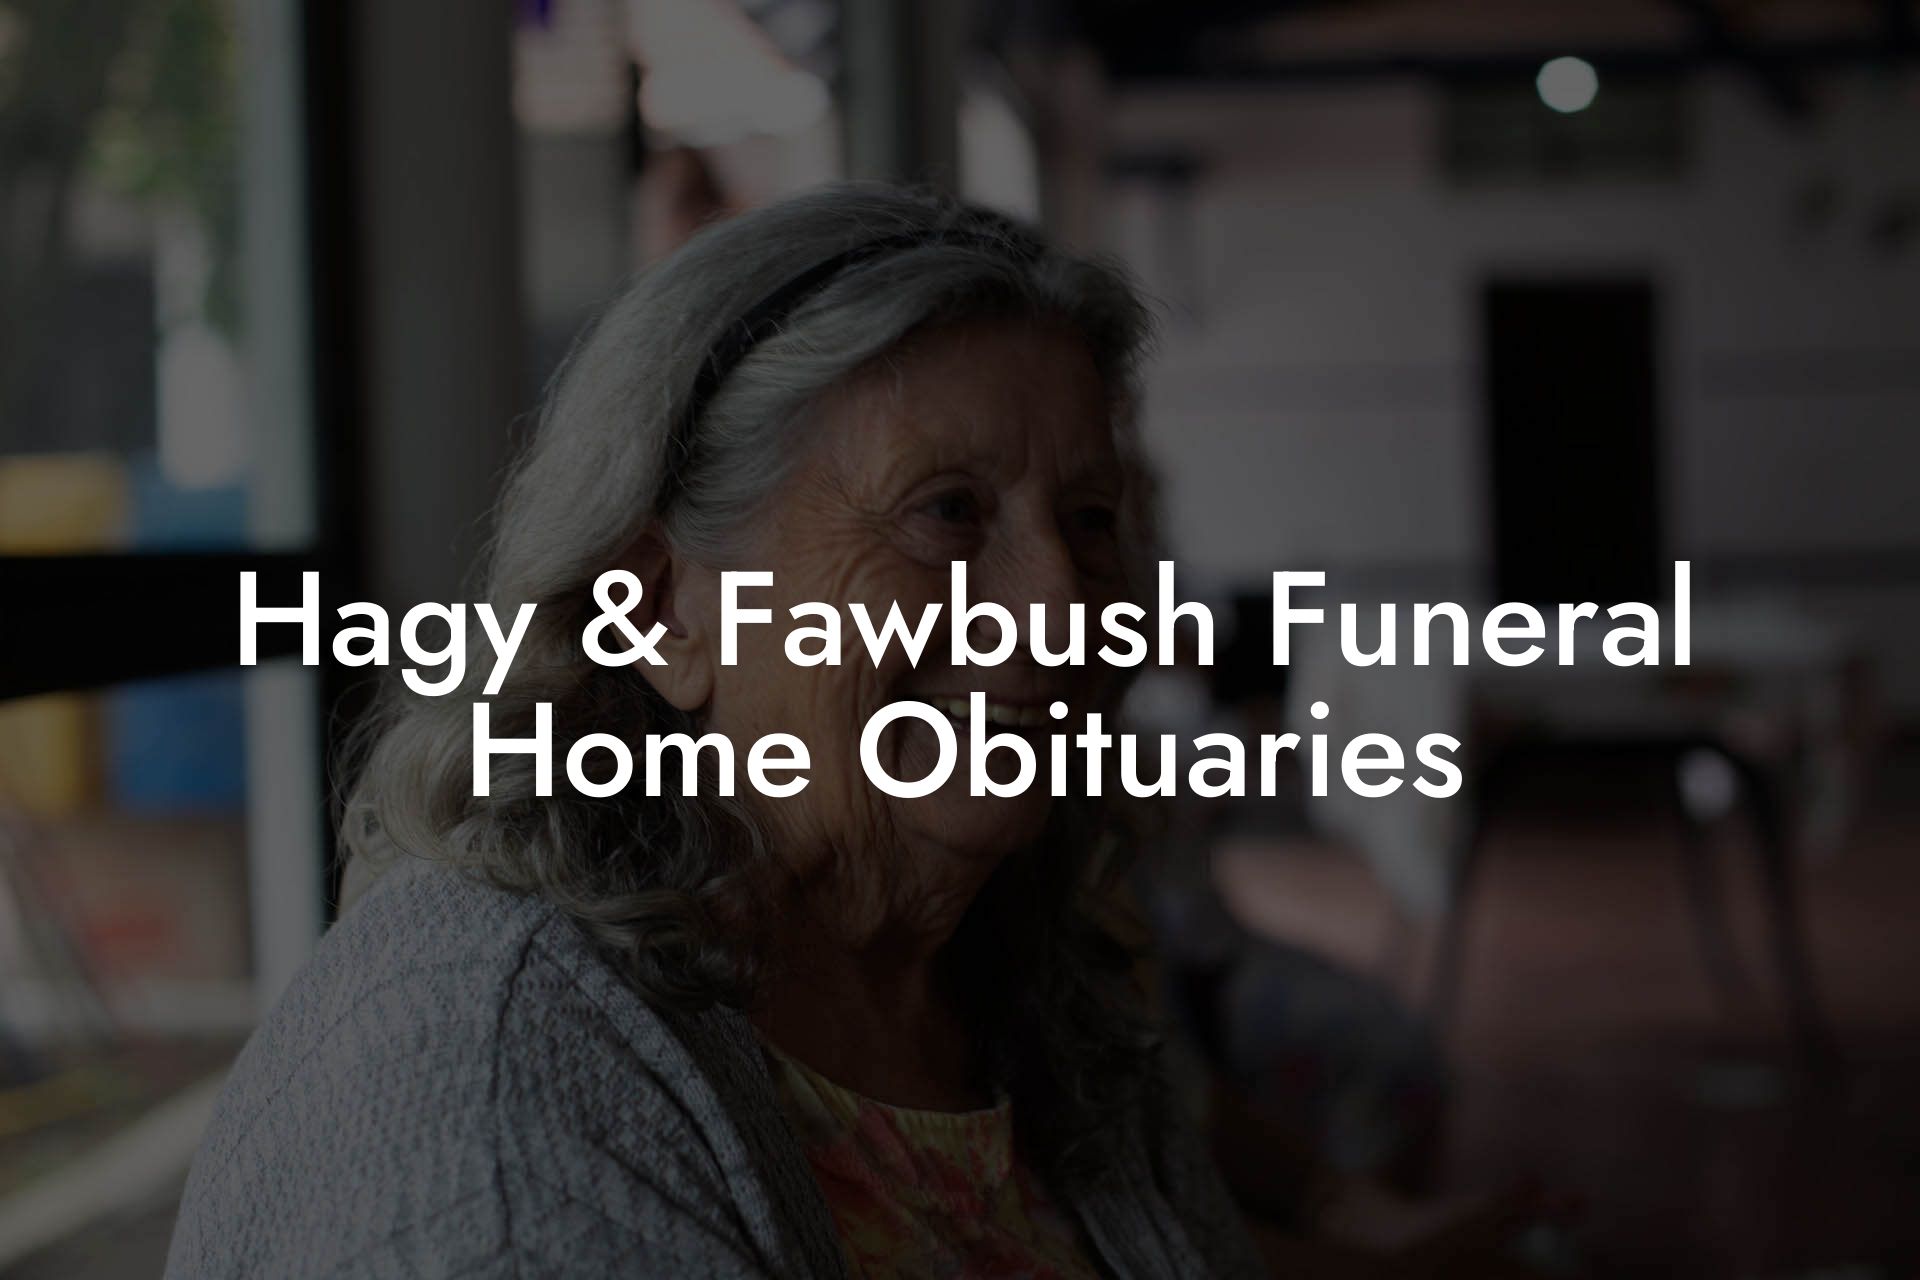 Hagy & Fawbush Funeral Home Obituaries